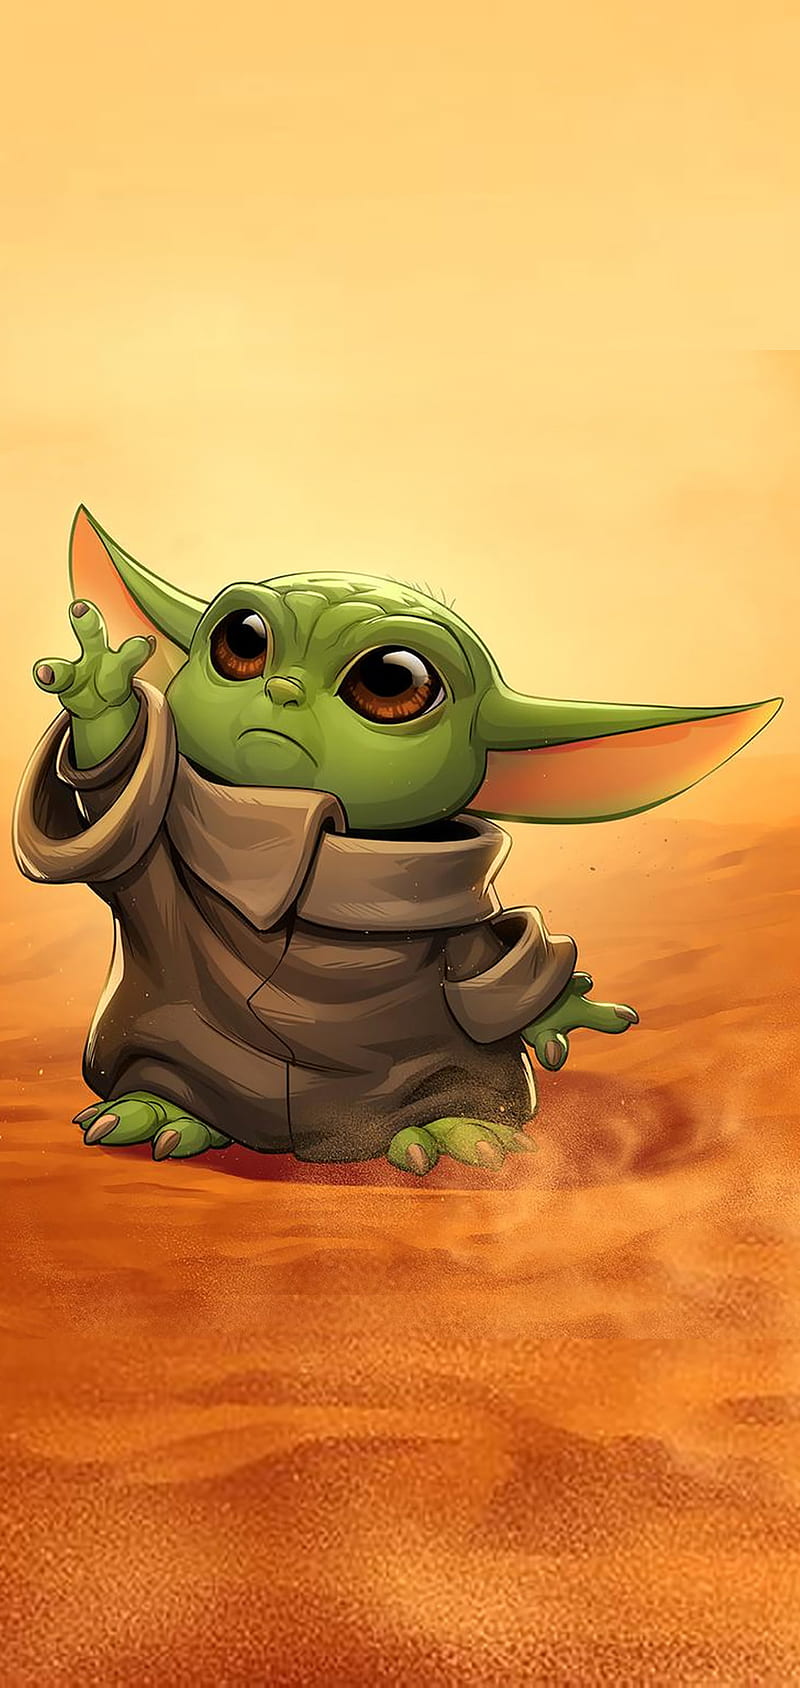 Hãy xem hình Baby Yoda dễ thương của chúng tôi để ngắm nhìn bé yêu được yêu thích nhất trong vũ trụ Star Wars!